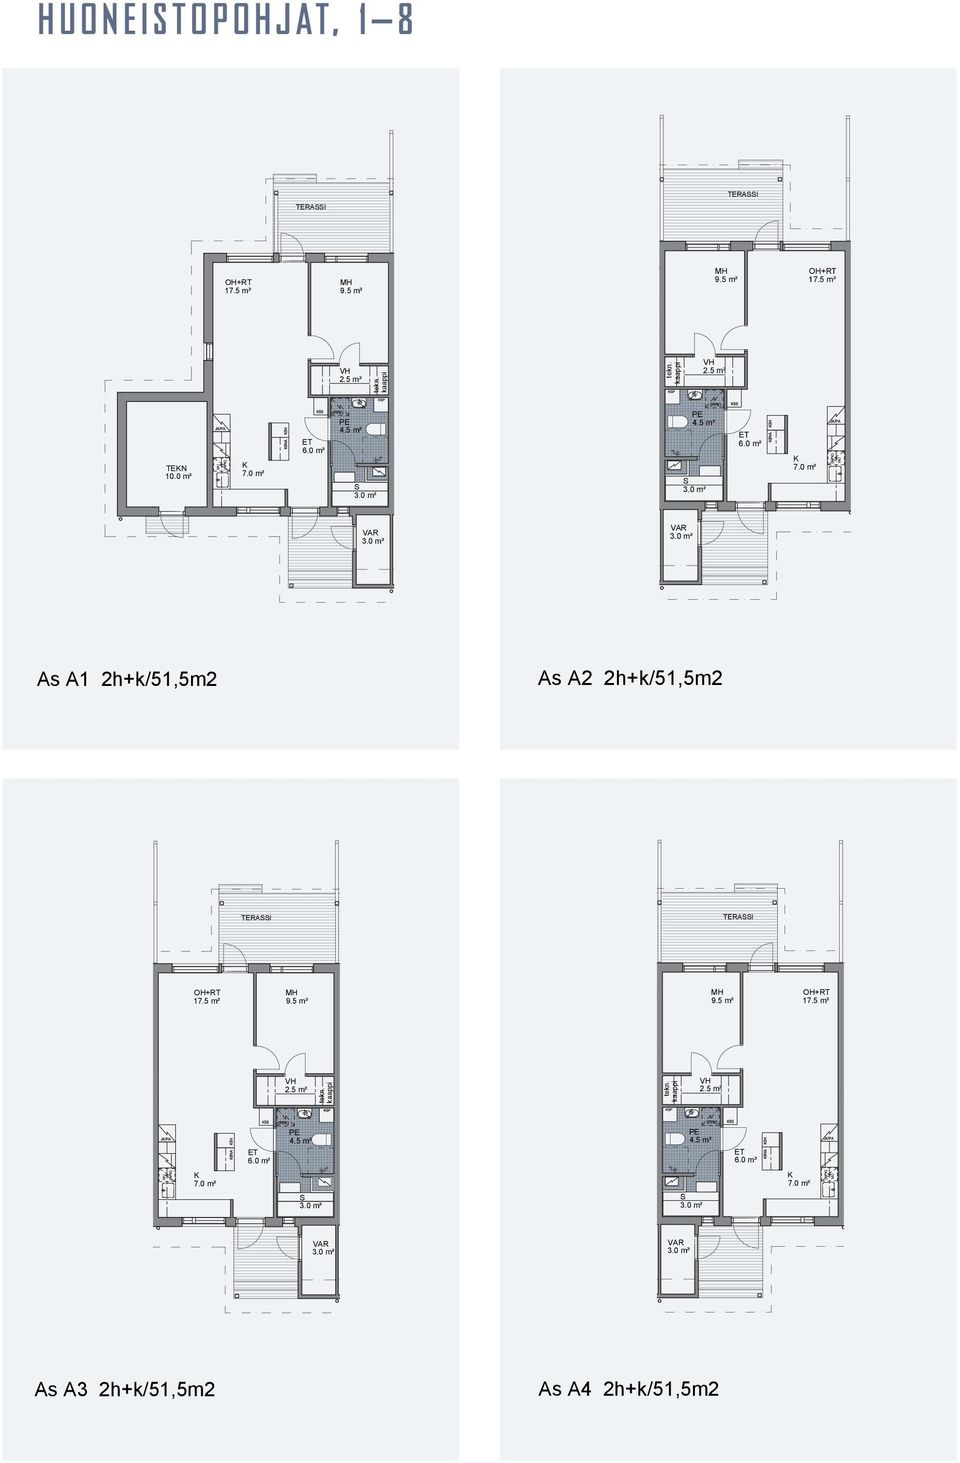 5.2015 TERAI TERAI OH+RT 17.5 m² OH+RT 17.5 m² PE 4.5 m² PE 4.5 m² 6.0 m² 6.